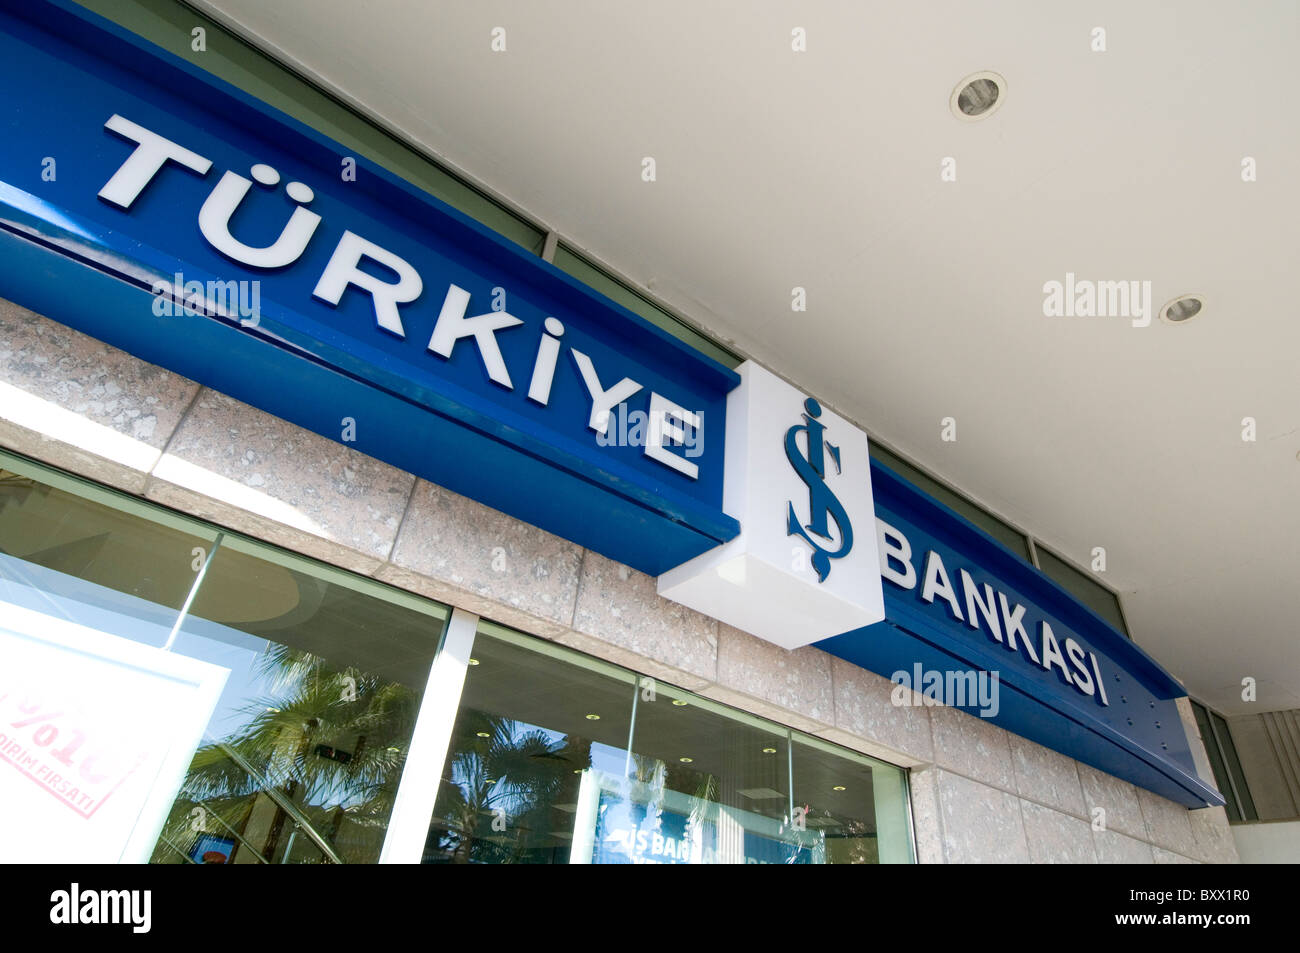 Купить турецкий банк. Is Bank Турция. ИШБАНК. Туркиш банк в Стамбуле. İş bankasiв Турции.